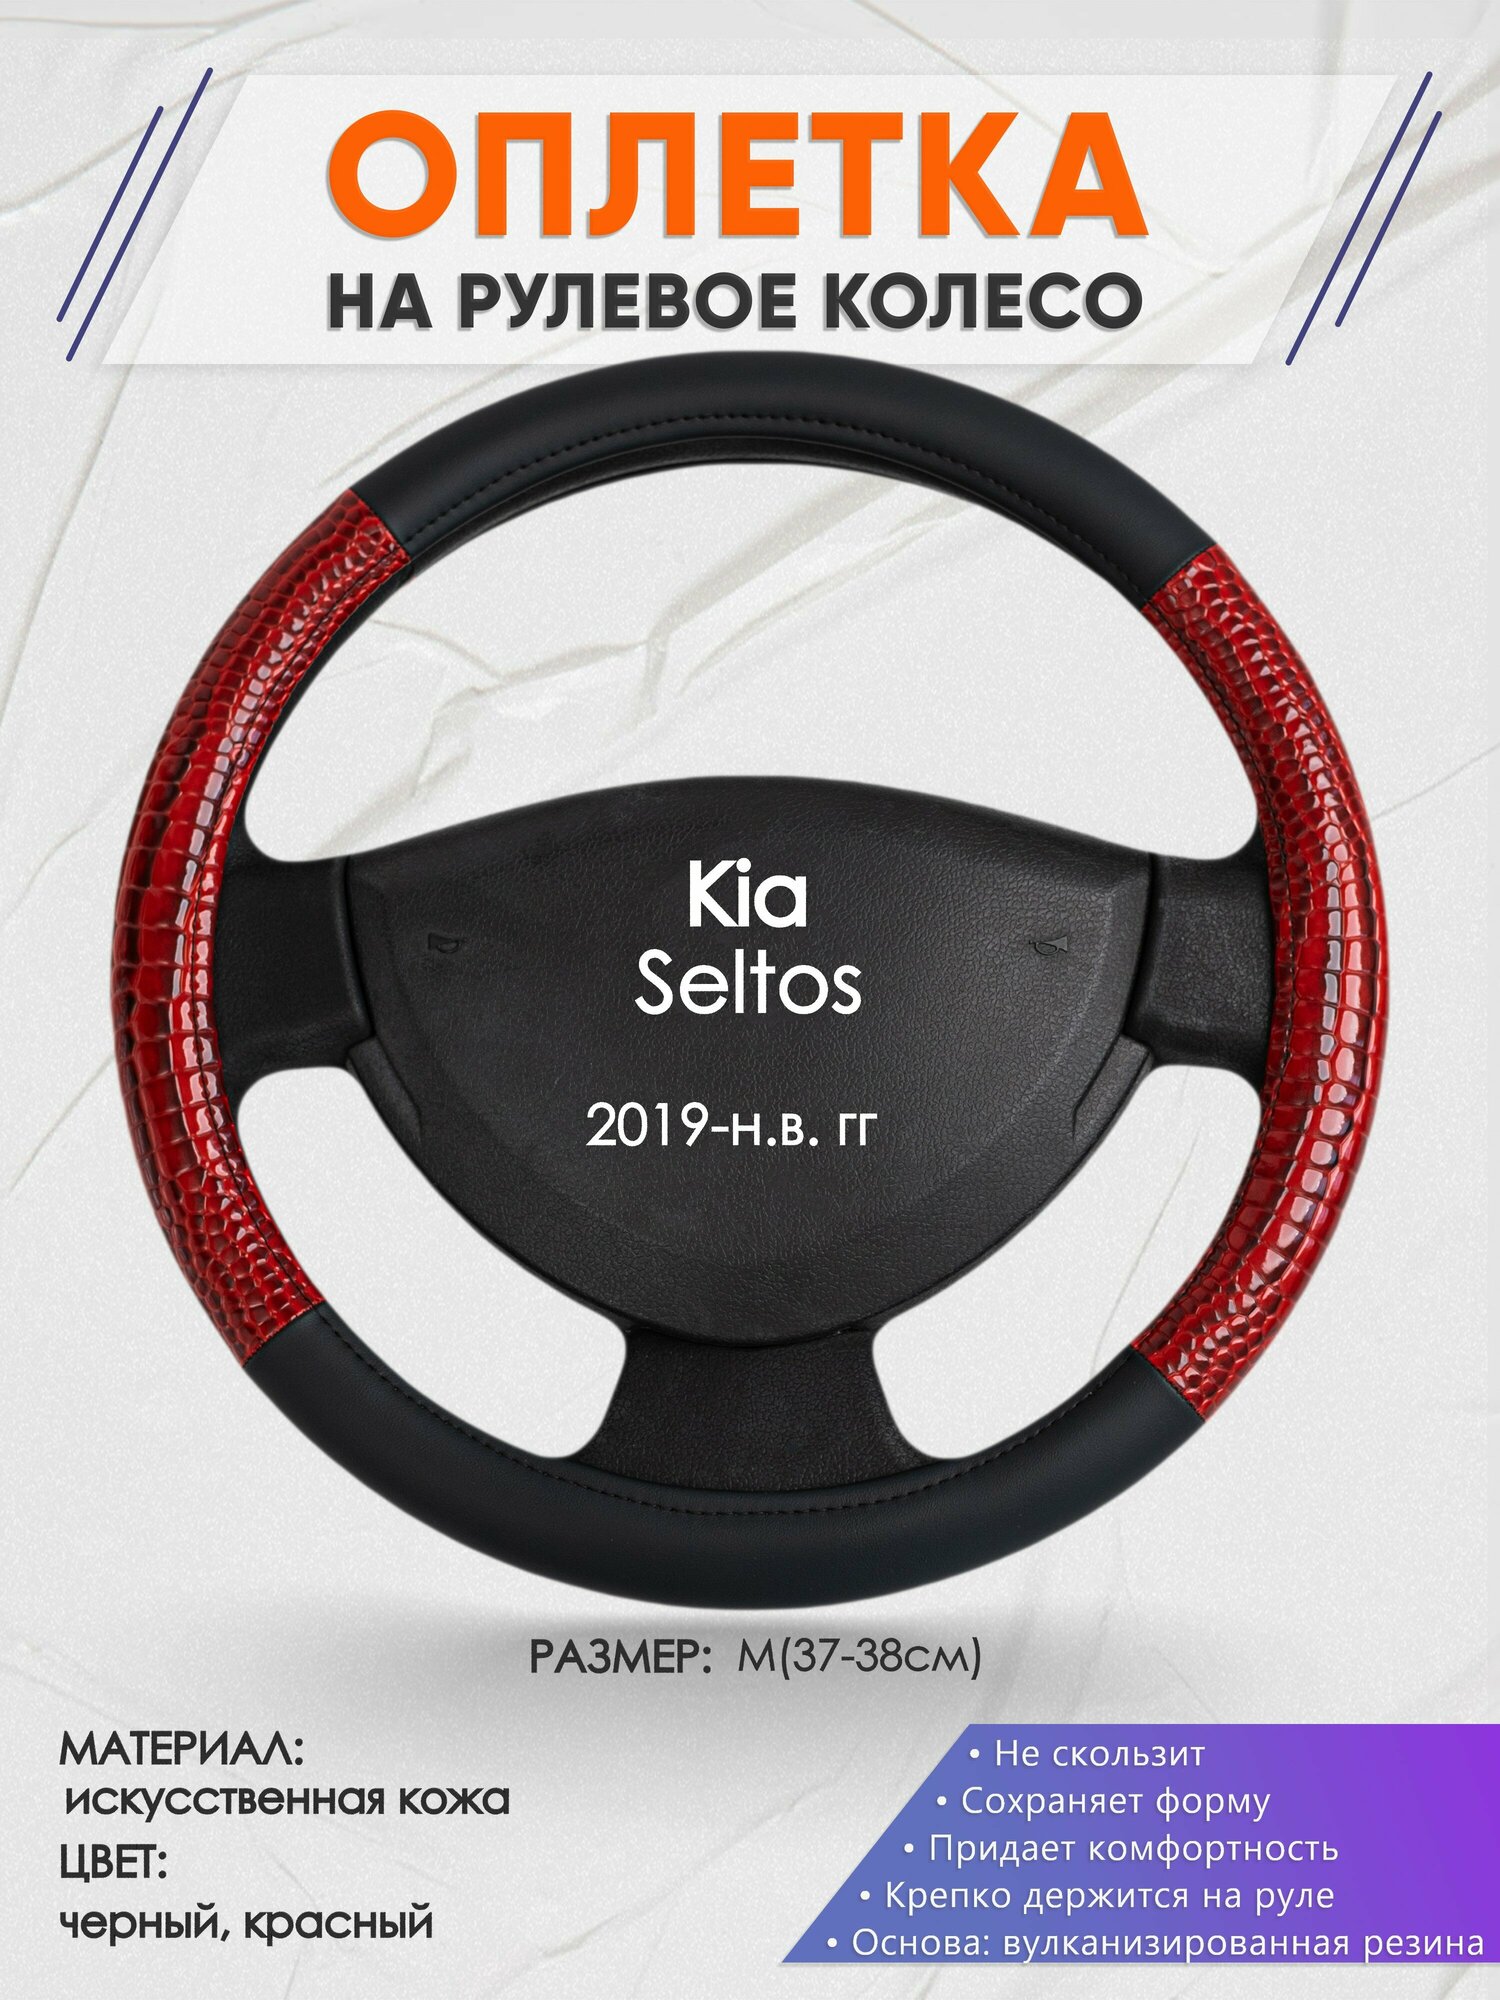 Оплетка на руль для Kia Seltos (Киа Селтос) 2019-н. в, M(37-38см), Искусственная кожа 16